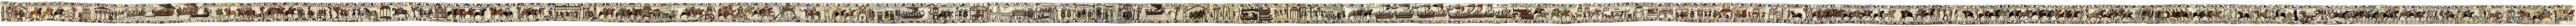 Los teóricos debaten si el Tapiz de Bayeux es un precursor del cómic.  